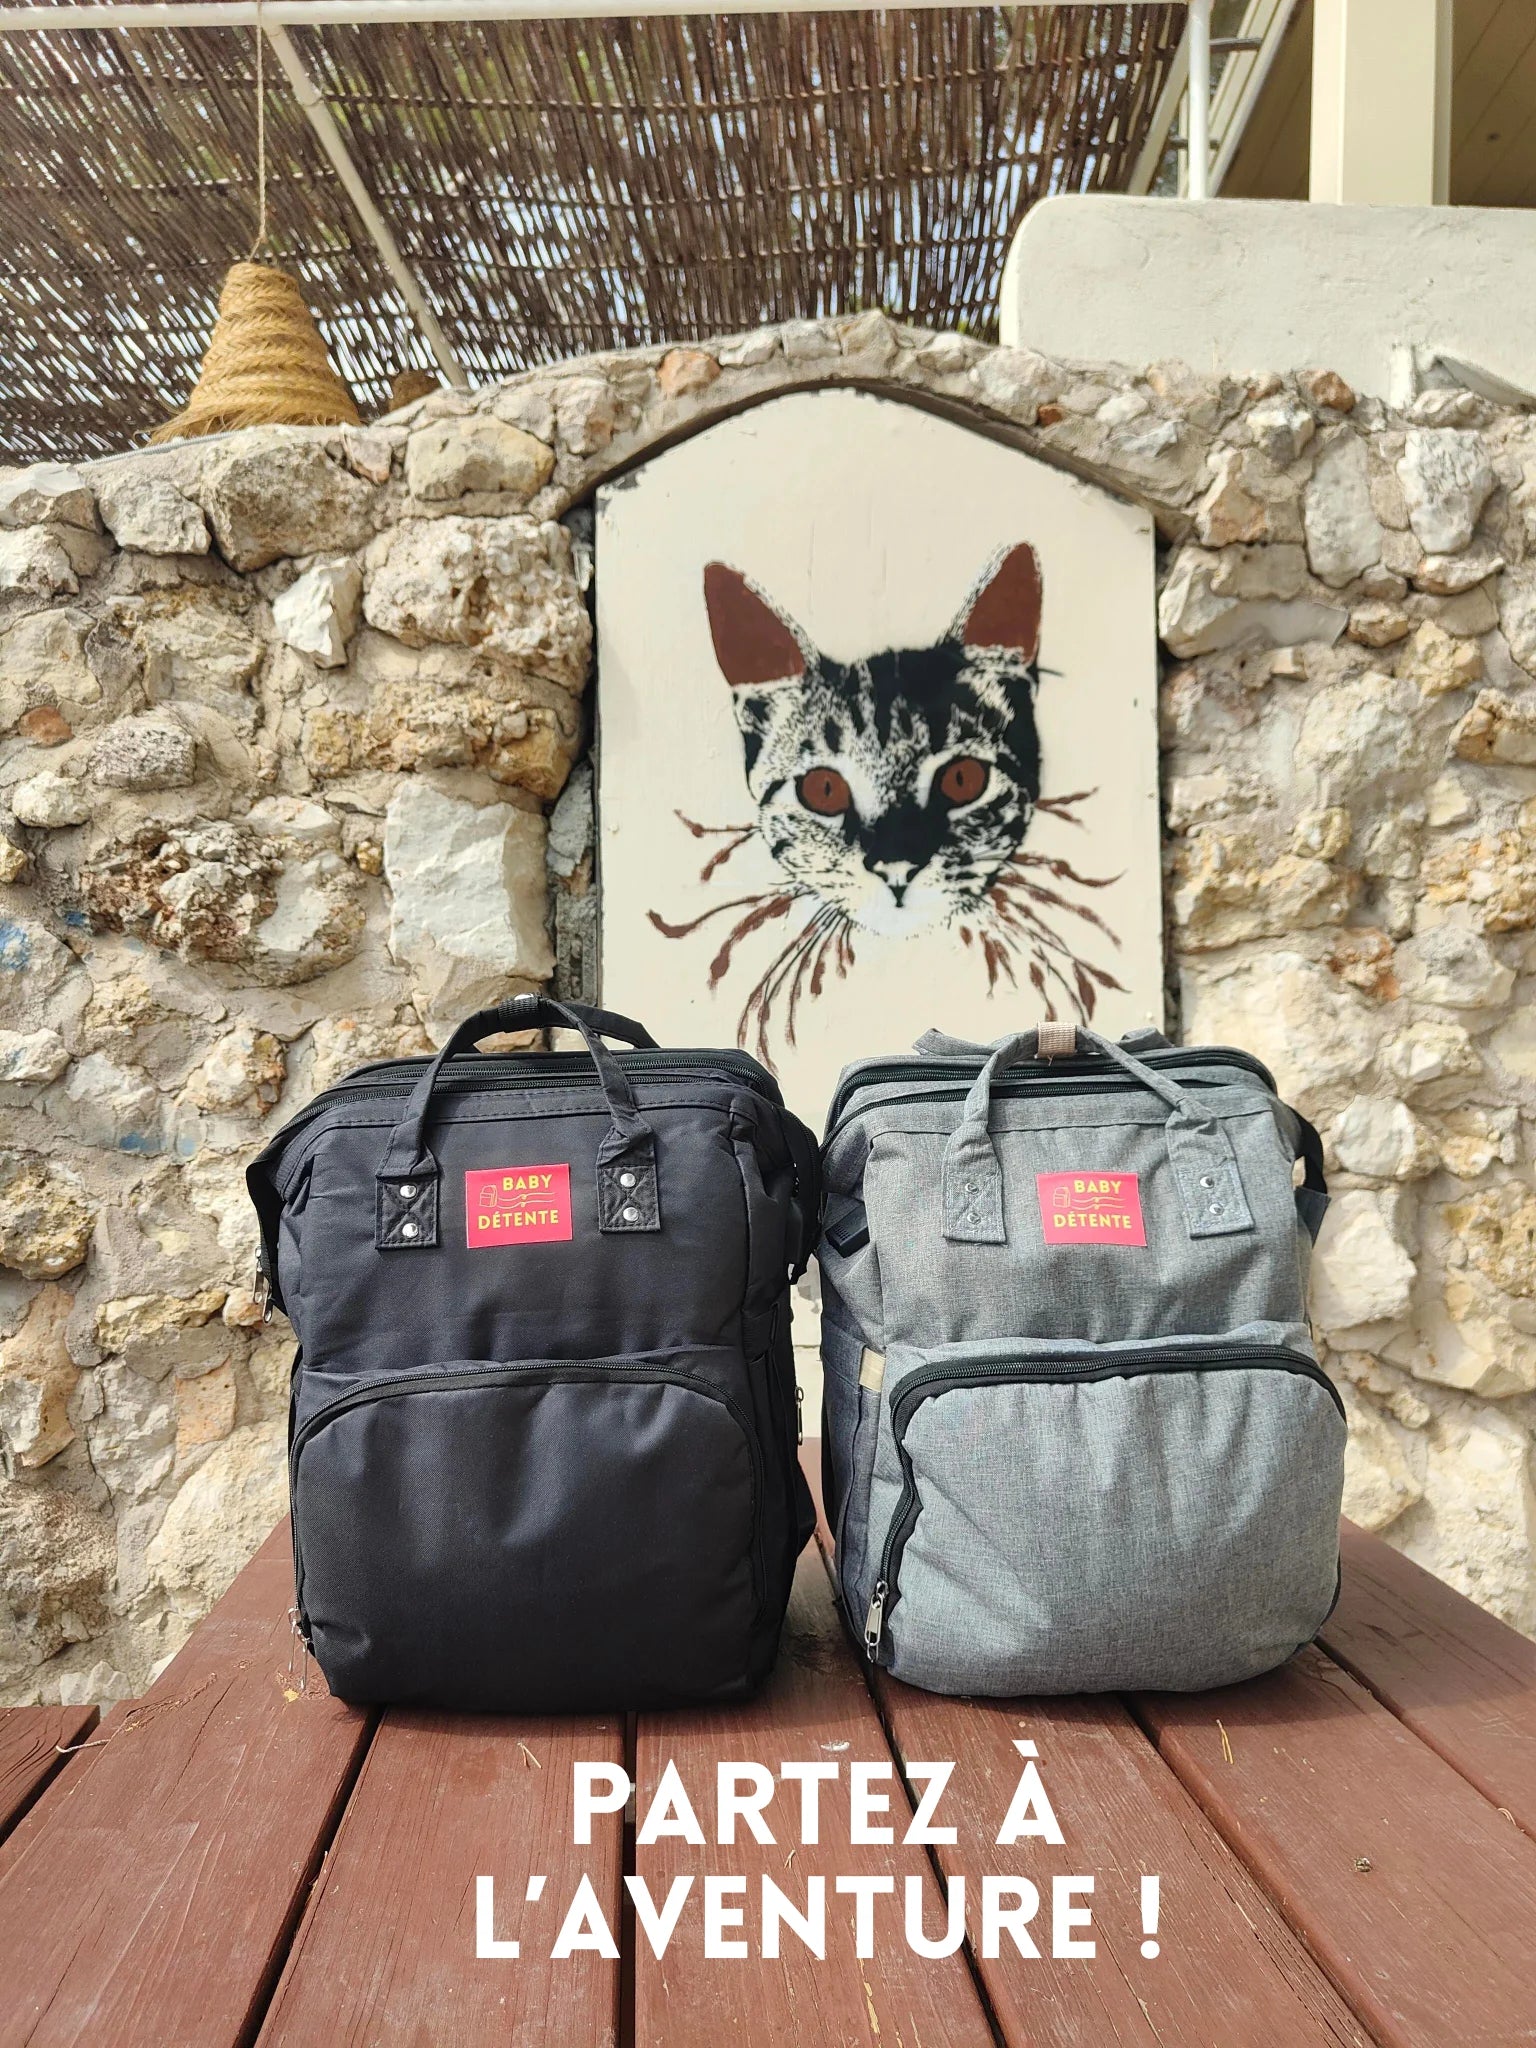 Présentation des deux sacs à langer babydetente couleur noir et couleur gris posés sur une table en bois avec en arrière plan le dessin style street art de la tête d'un chat en grand format sur un mur de pierre - sur la photo le slogan écrit est "Partez à l'aventure"